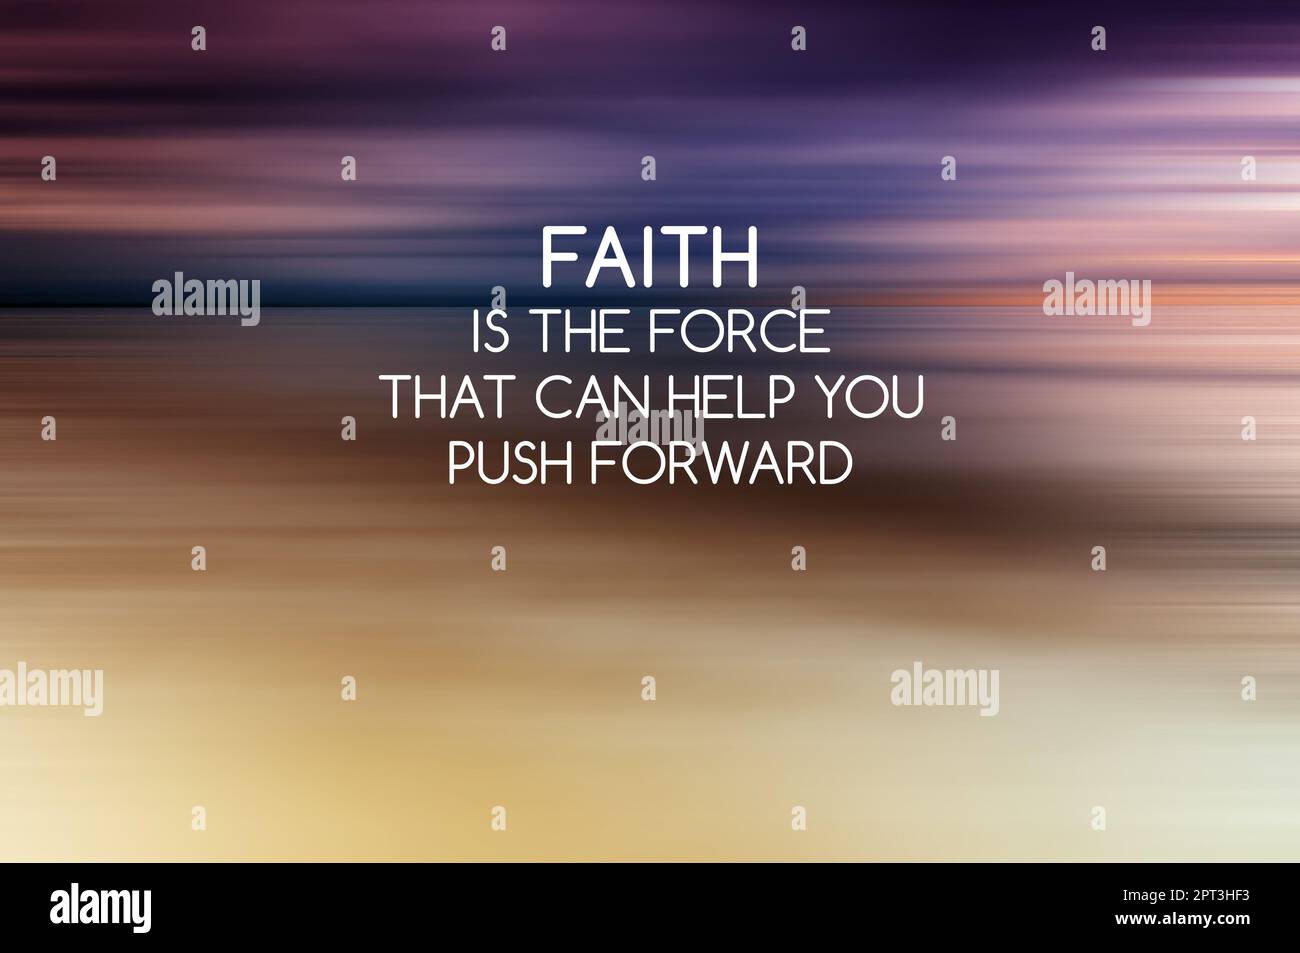 Hintergrund bei Sonnenuntergang mit inspirierenden Zitaten – Faith ist die Kraft, die dir dabei helfen kann, Fortschritte zu erzielen Stockfoto